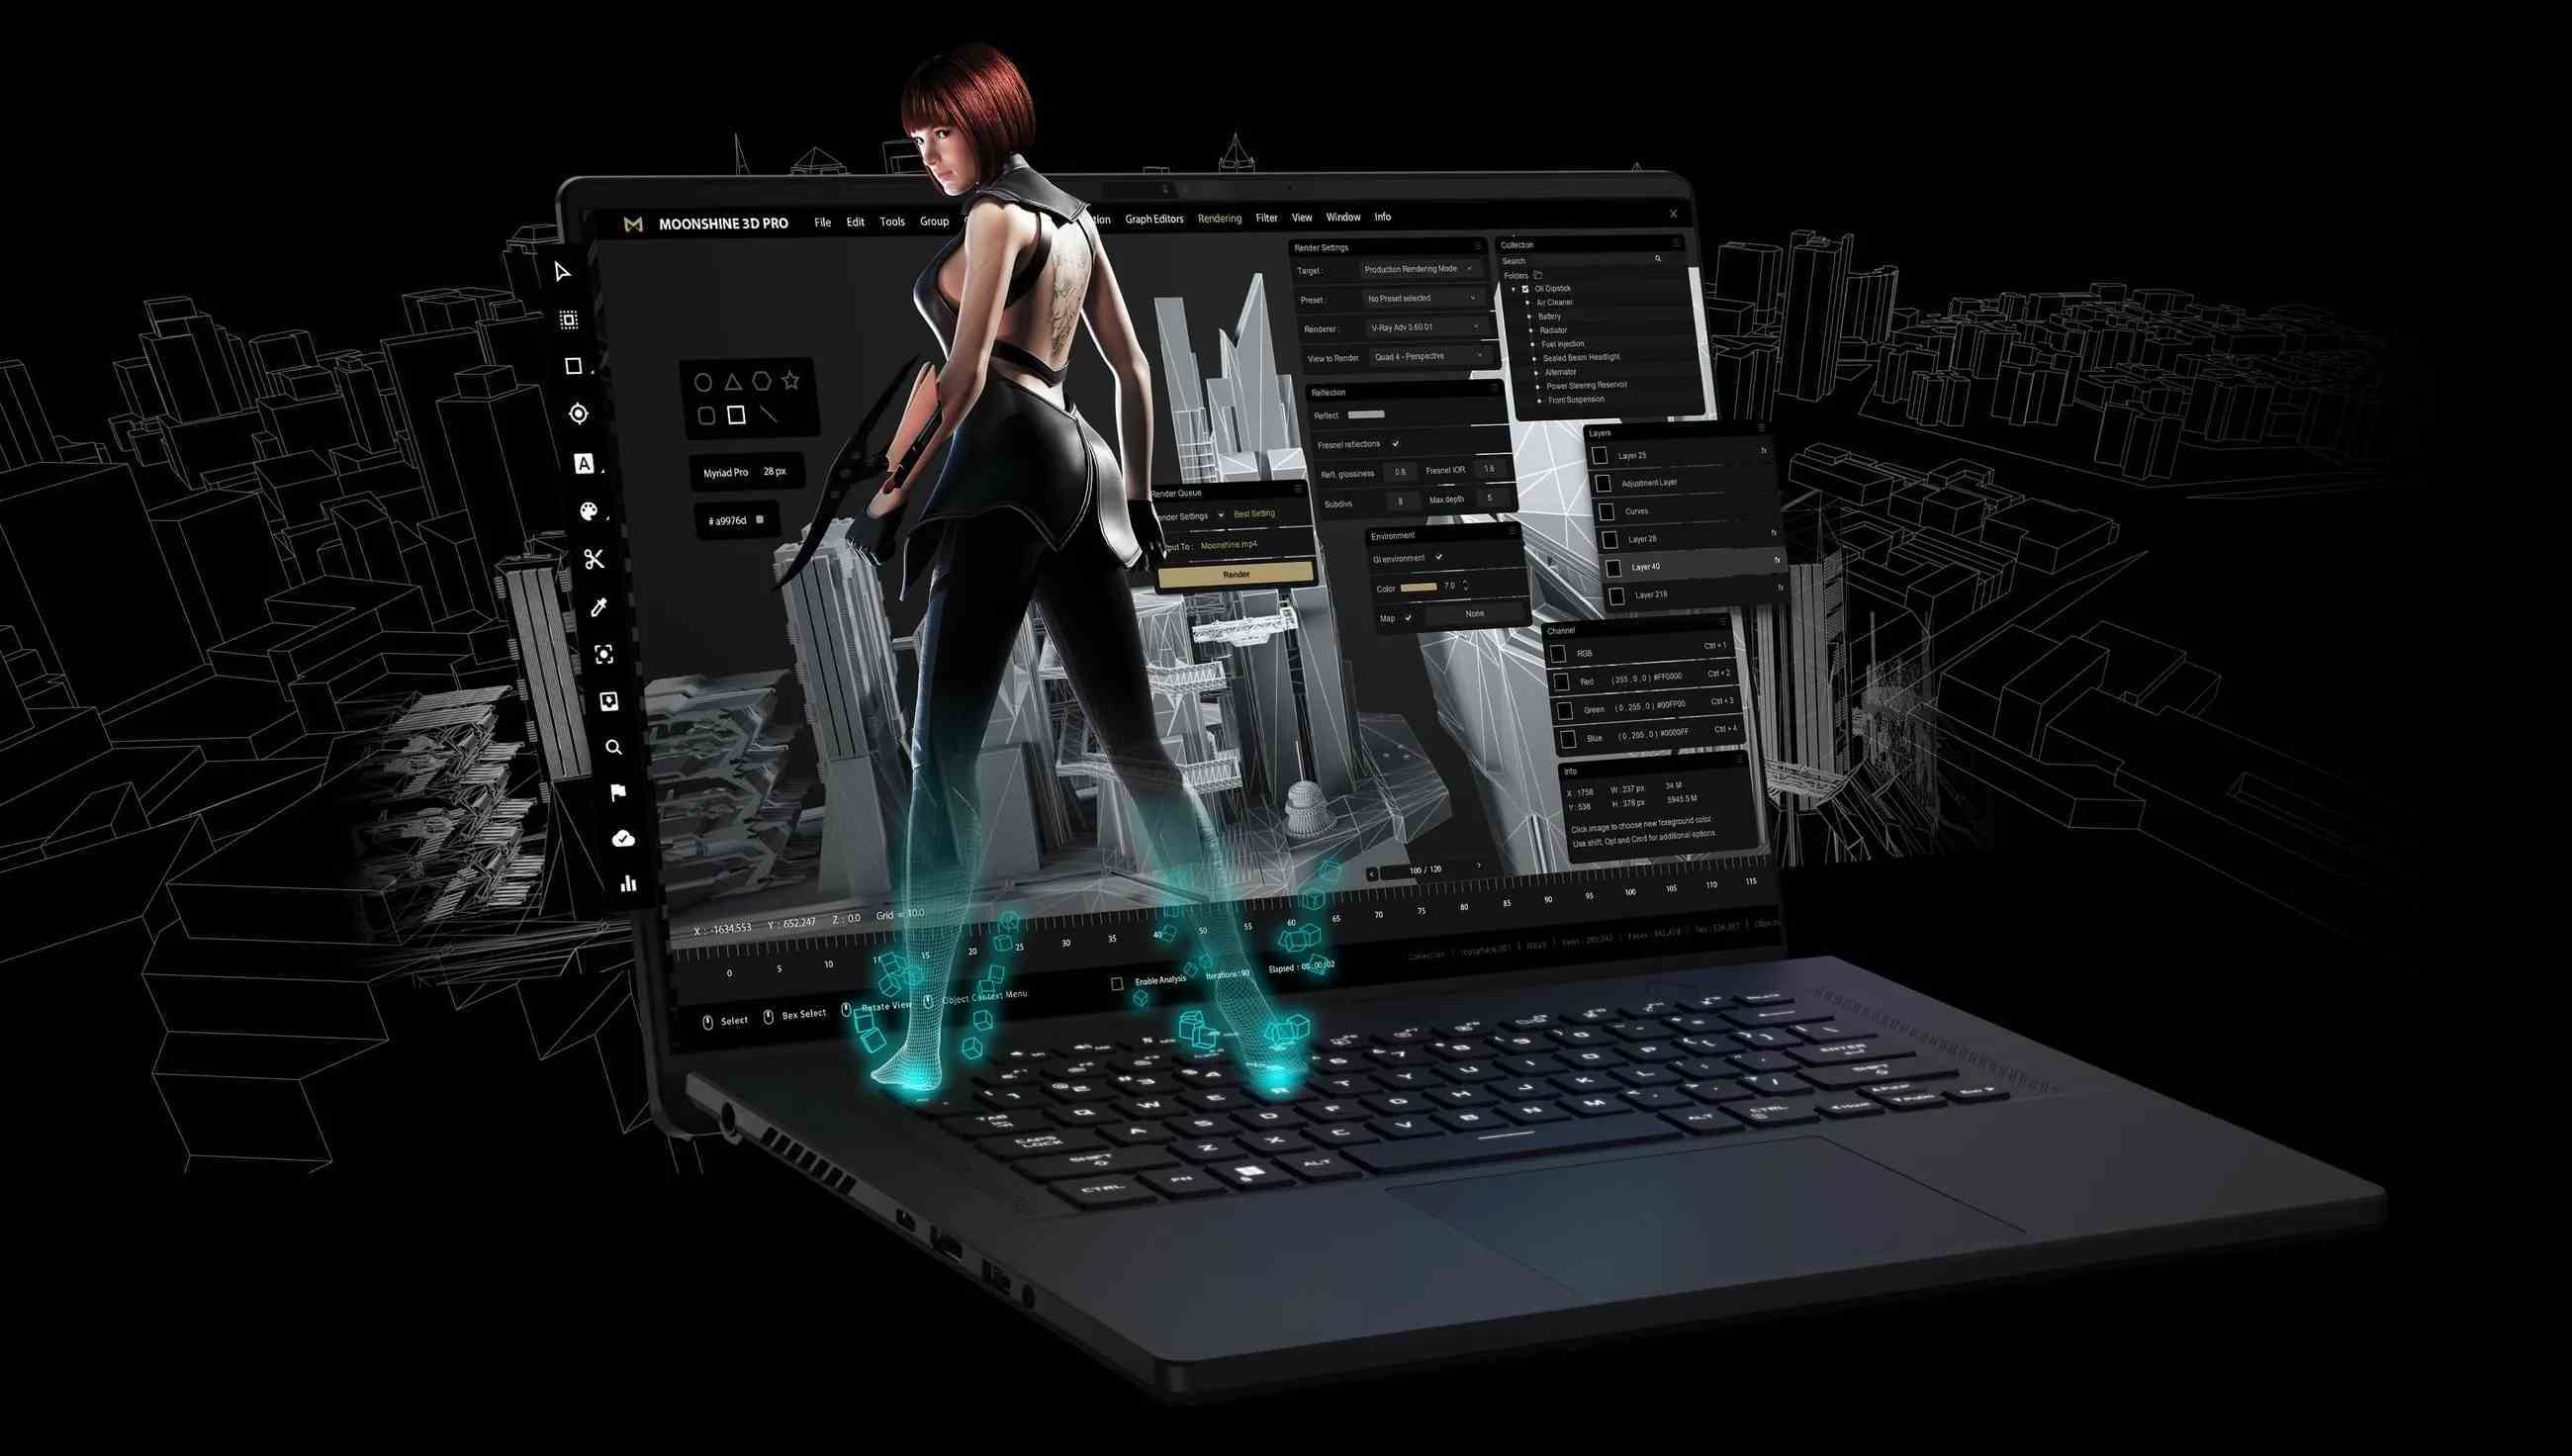 Üzerinde stilize edilmiş bir siberpunk kadının durduğu bir Asus dizüstü oyun bilgisayarı.